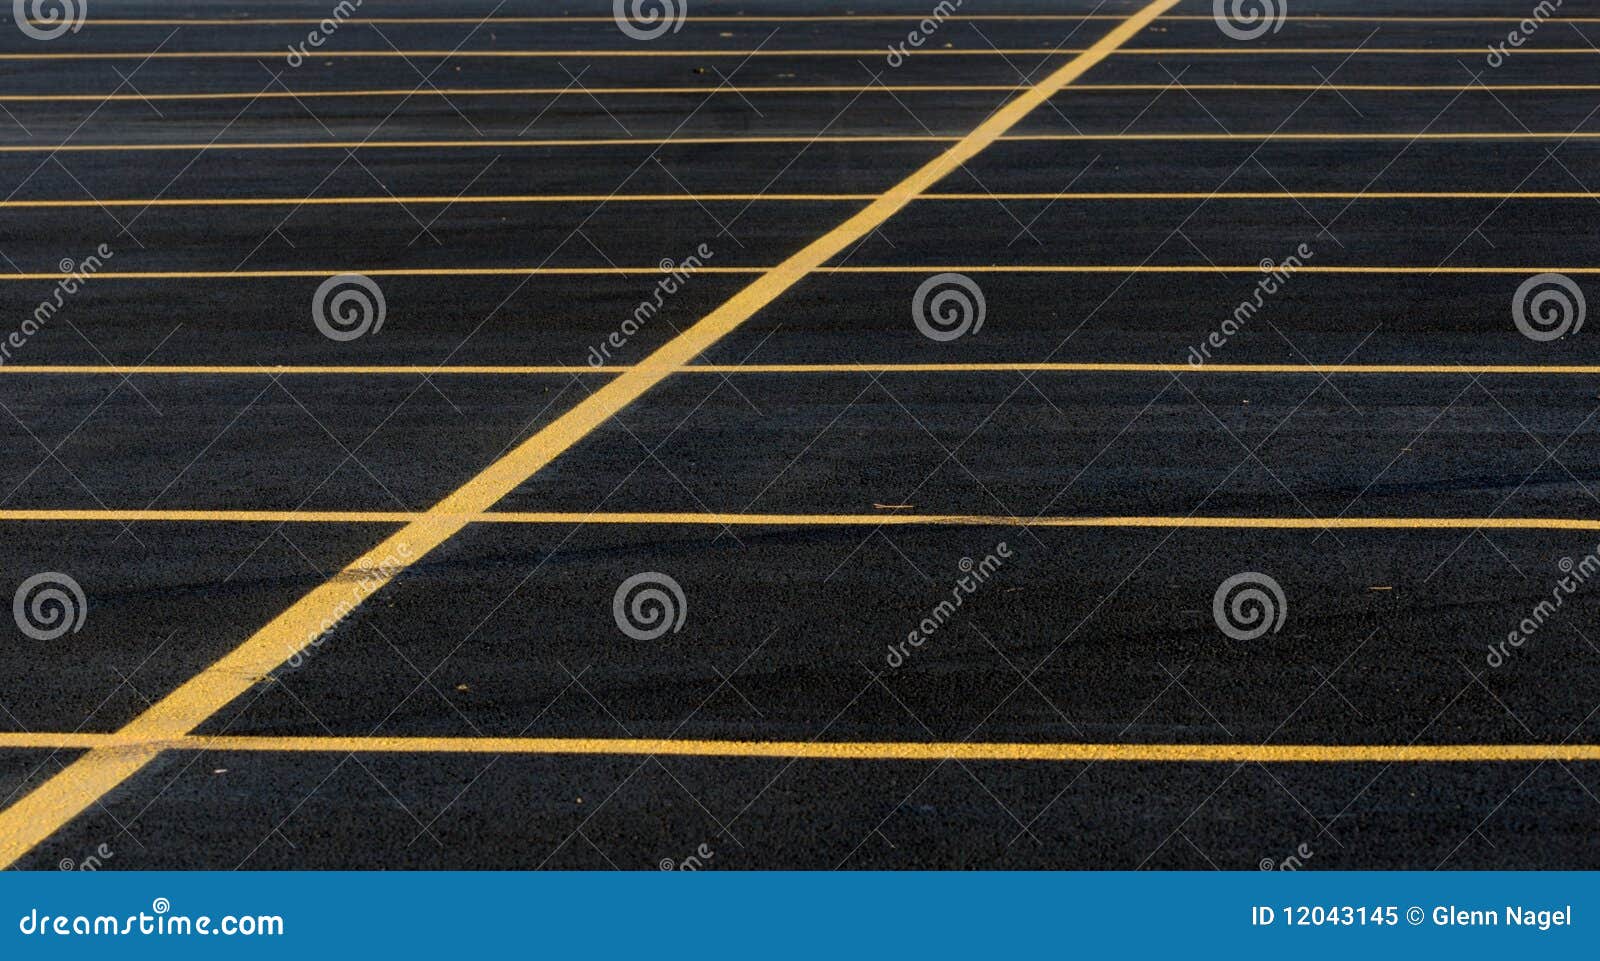 parking lot lines